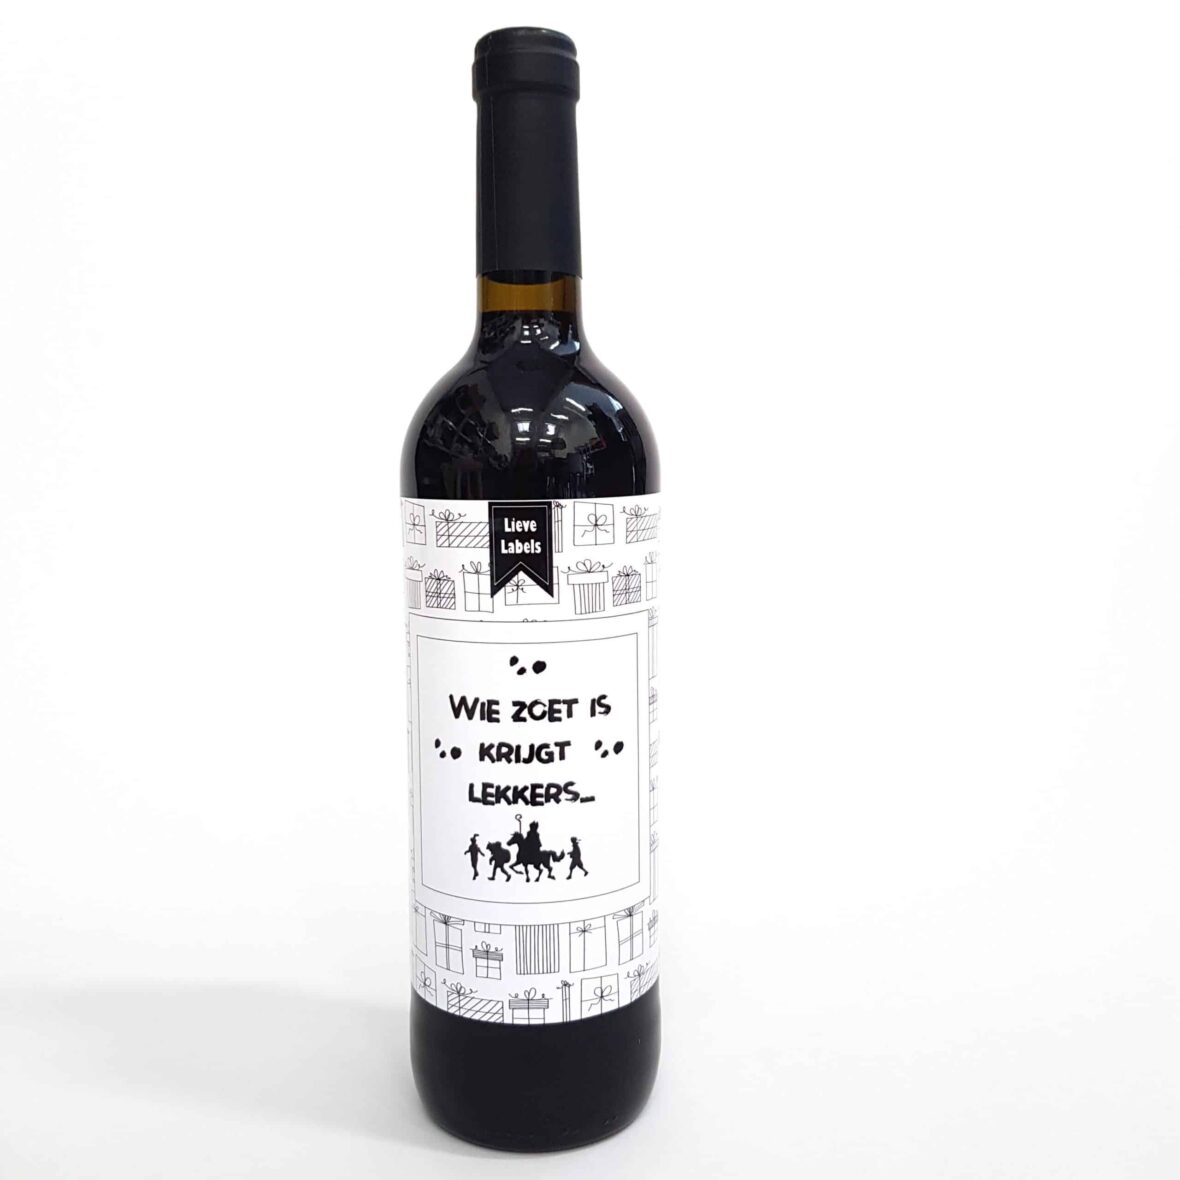 Wijn etiket – Wie zoet is krijgt lekkers